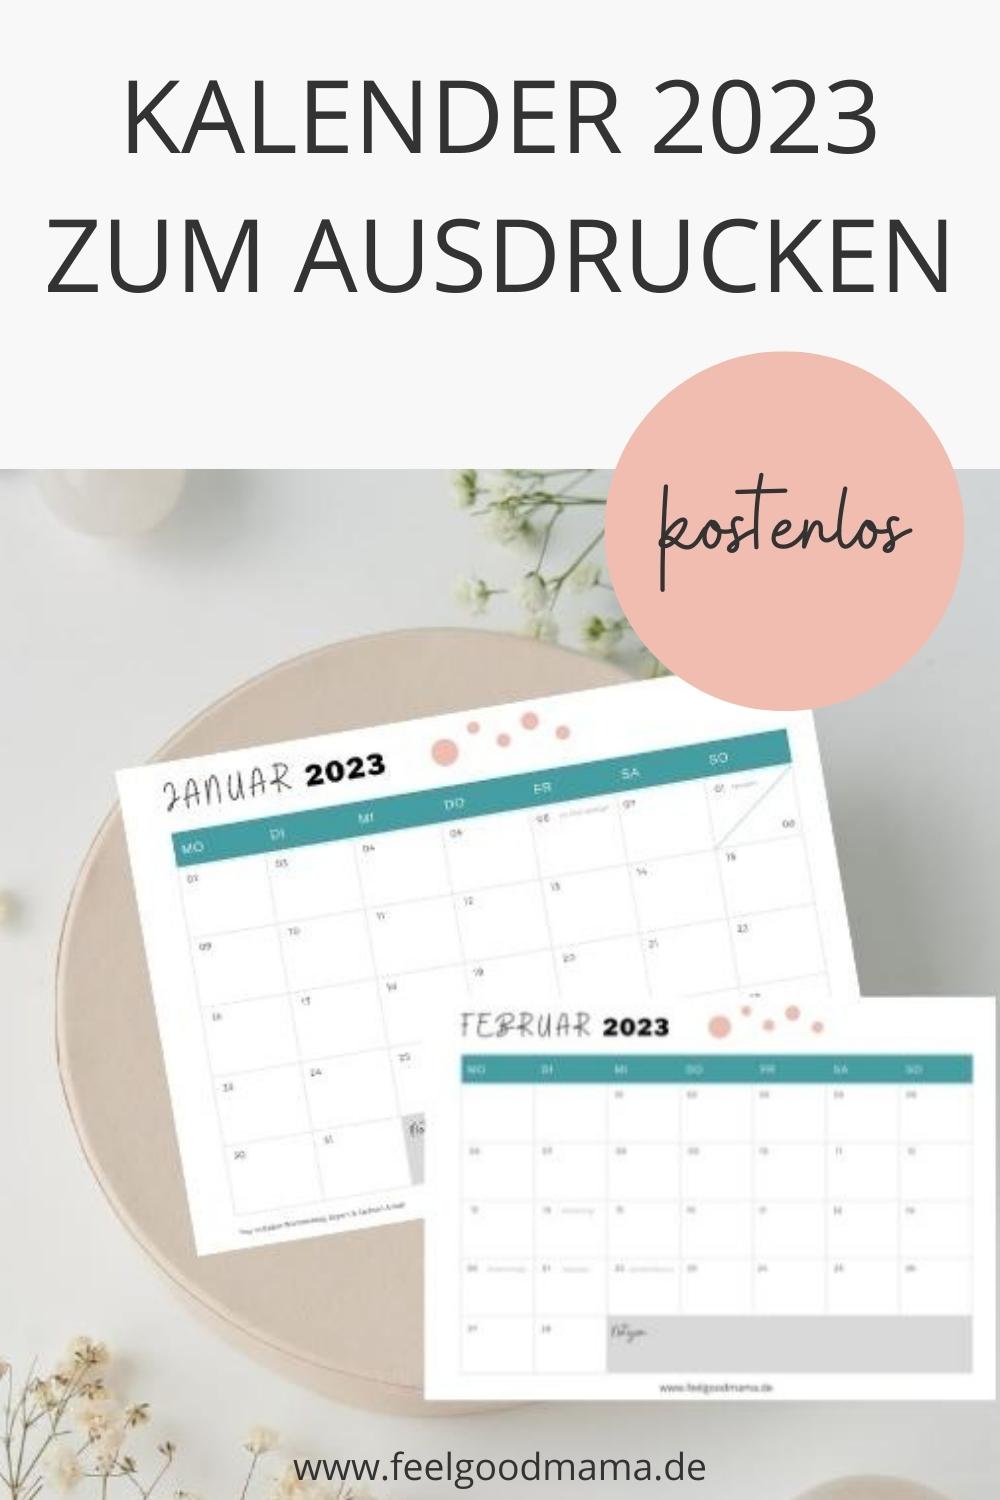 Kalender 2023 zum Ausdrucken, Monatskalender, kostenloser Familienkalender, Kalenderübersicht, Freebie Kalender 2023